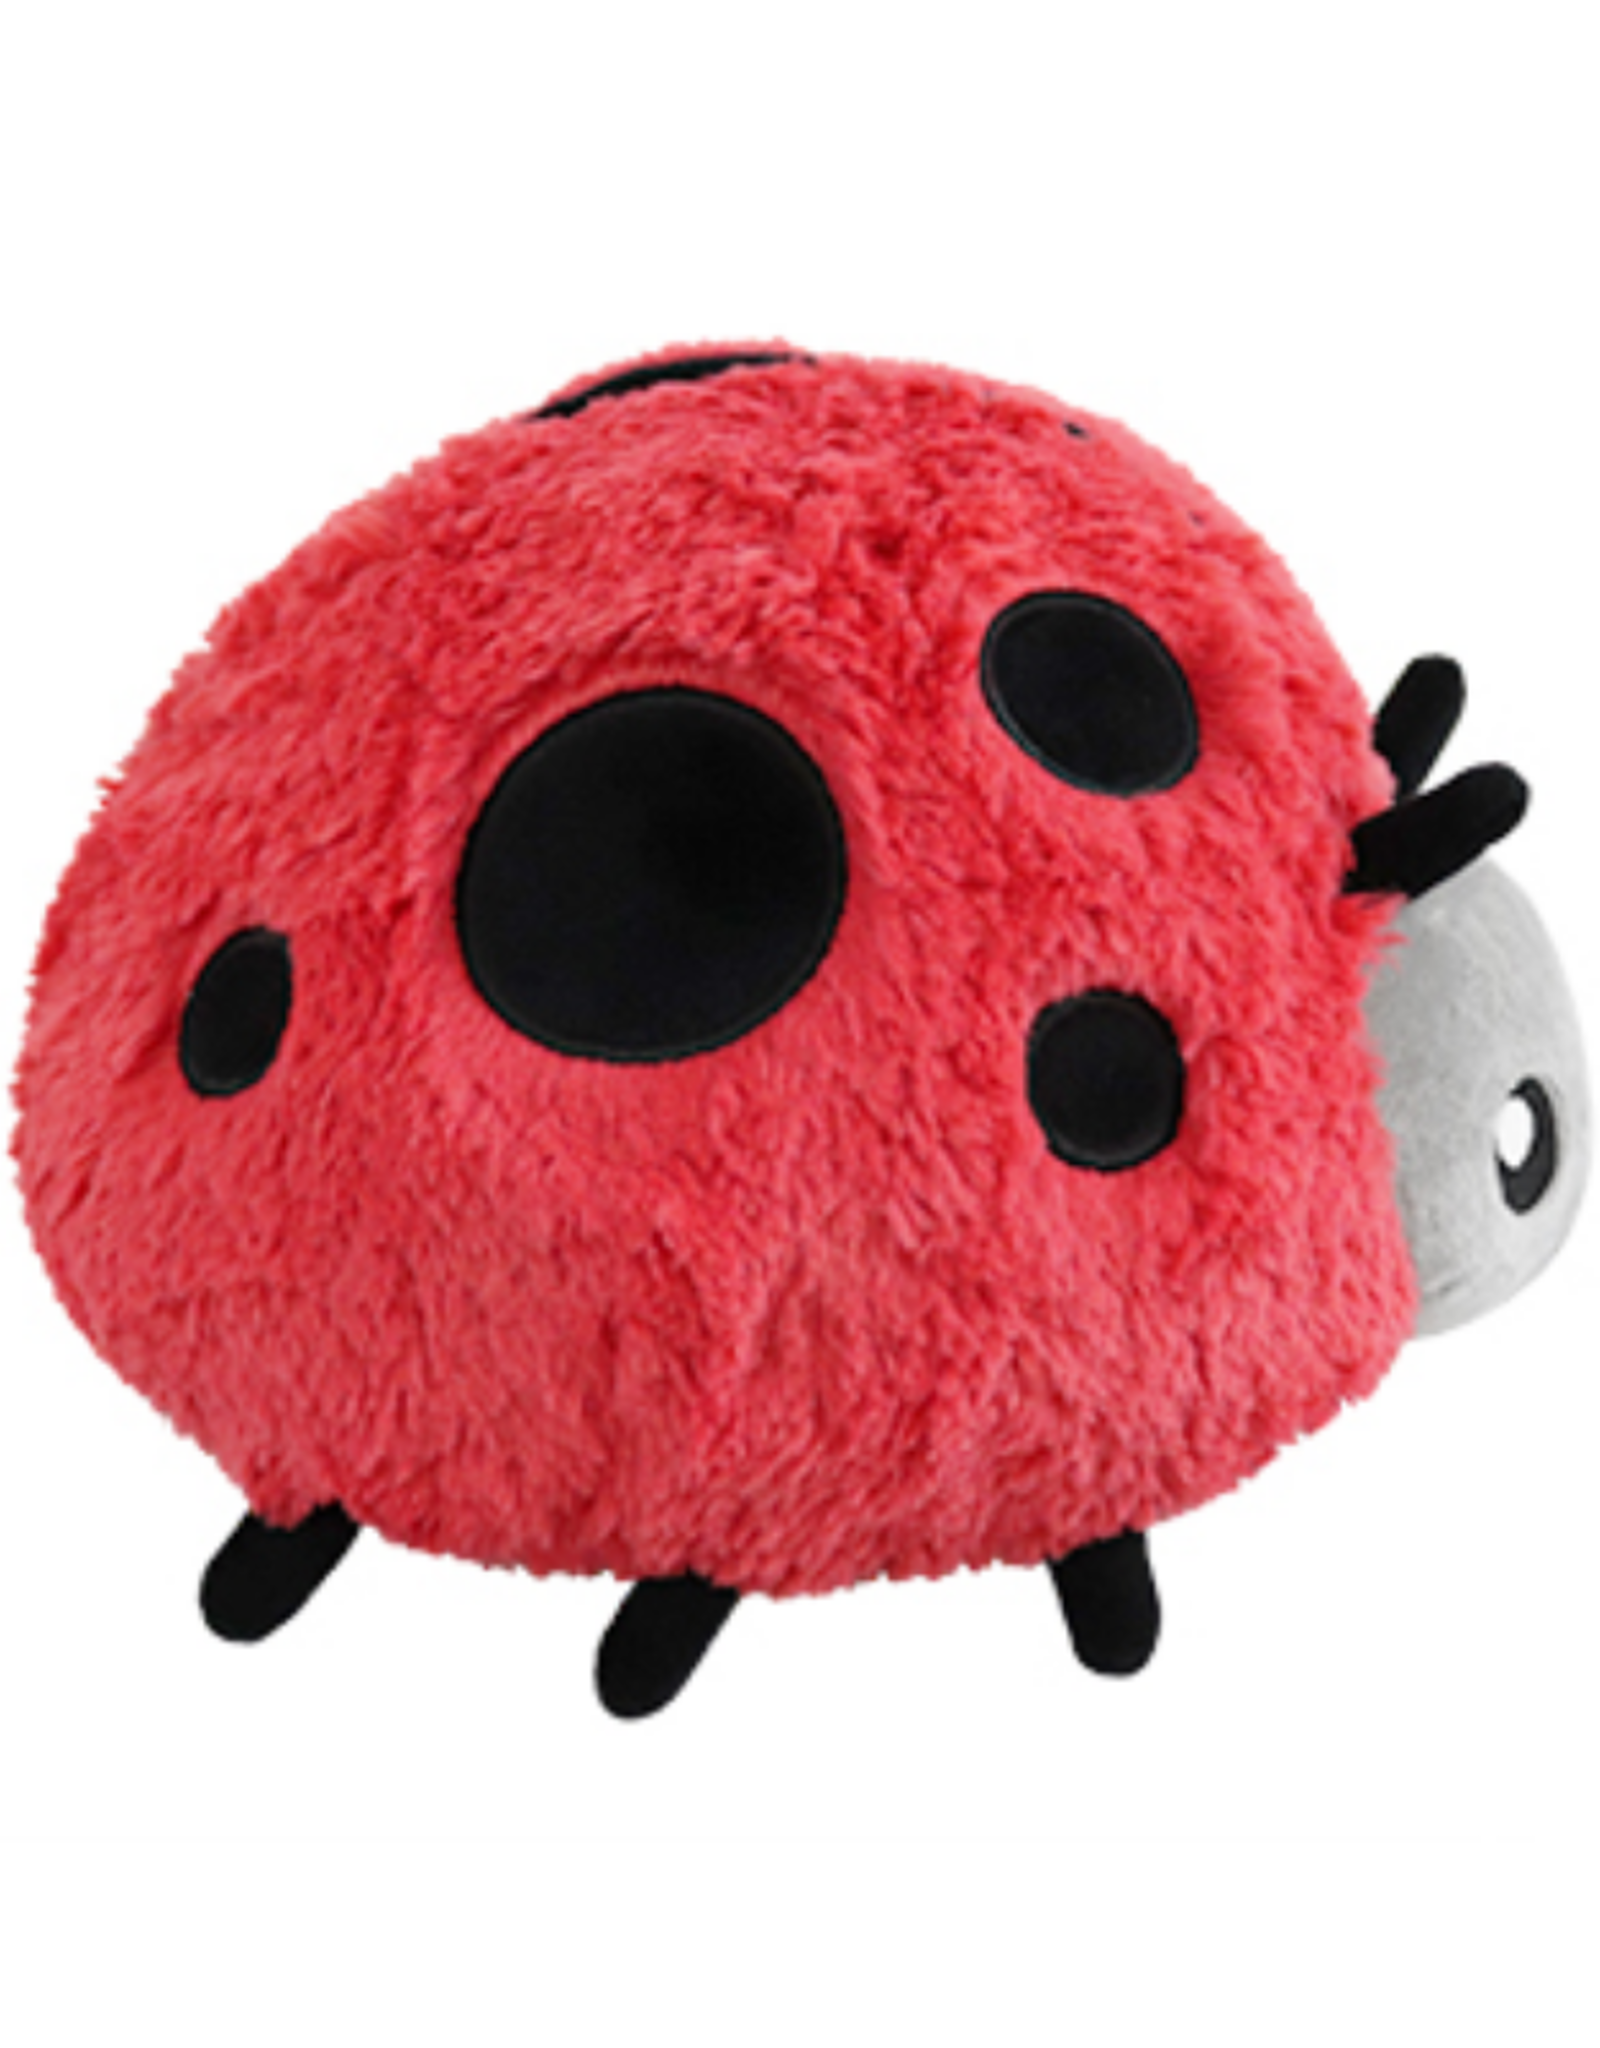 Squishable Mini Squishable: Ladybug